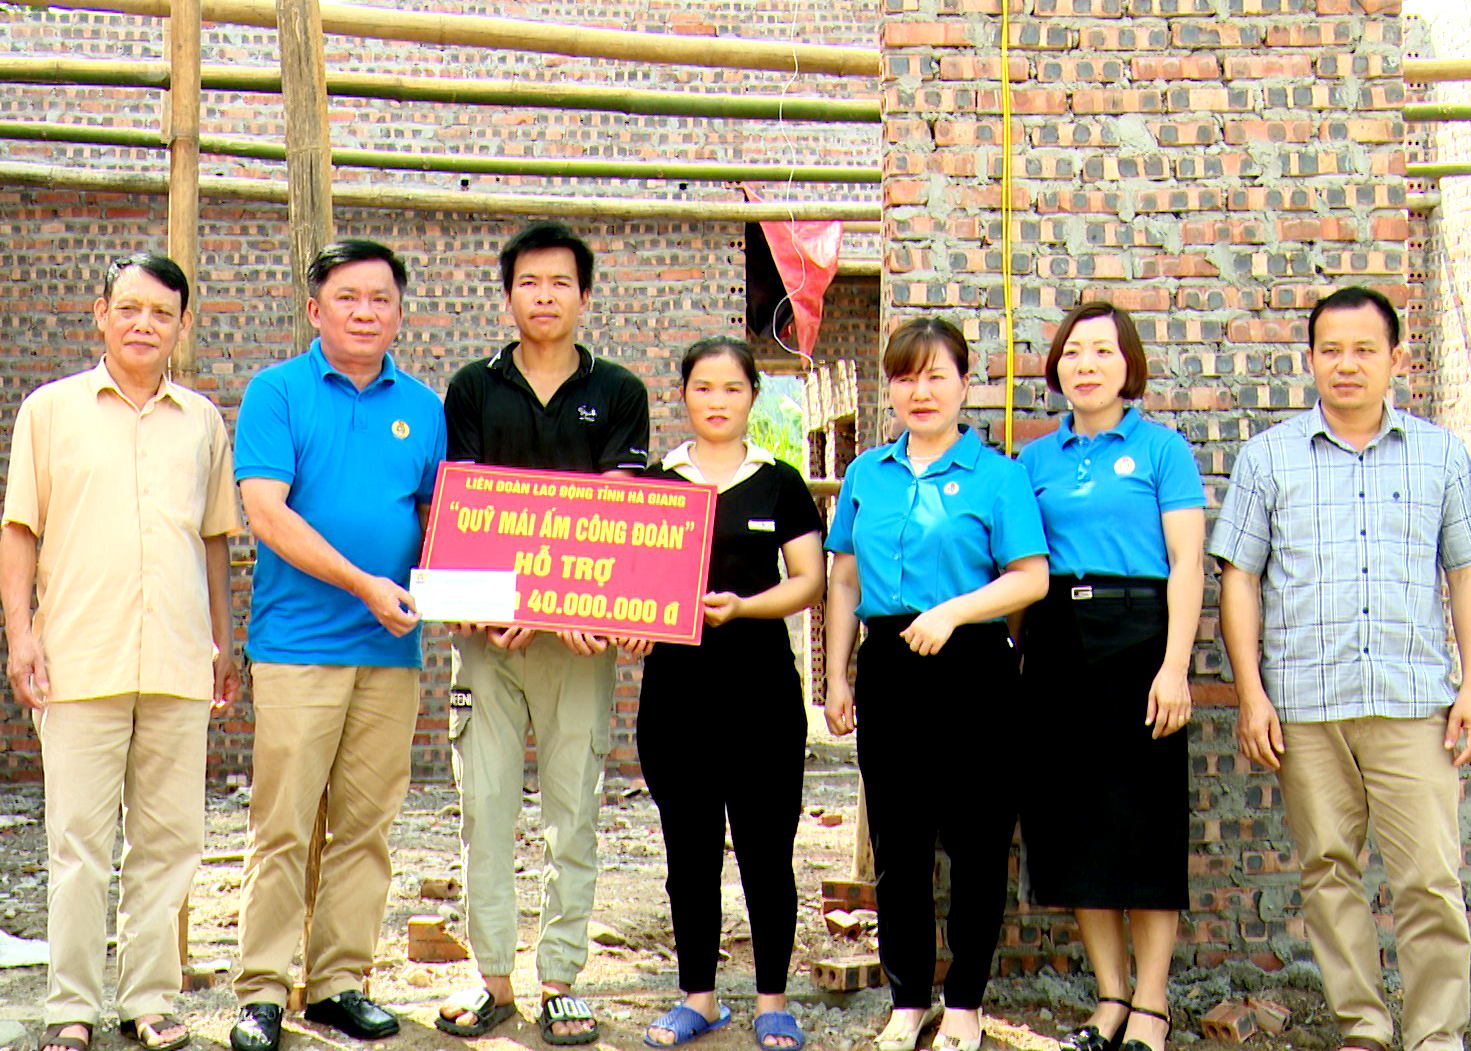 Đoàn viên Chẩu Minh Tân được hỗ trợ 40 triệu đồng từ Quỹ “Mái ấm công đoàn” để xây dựng nhà ở mới.